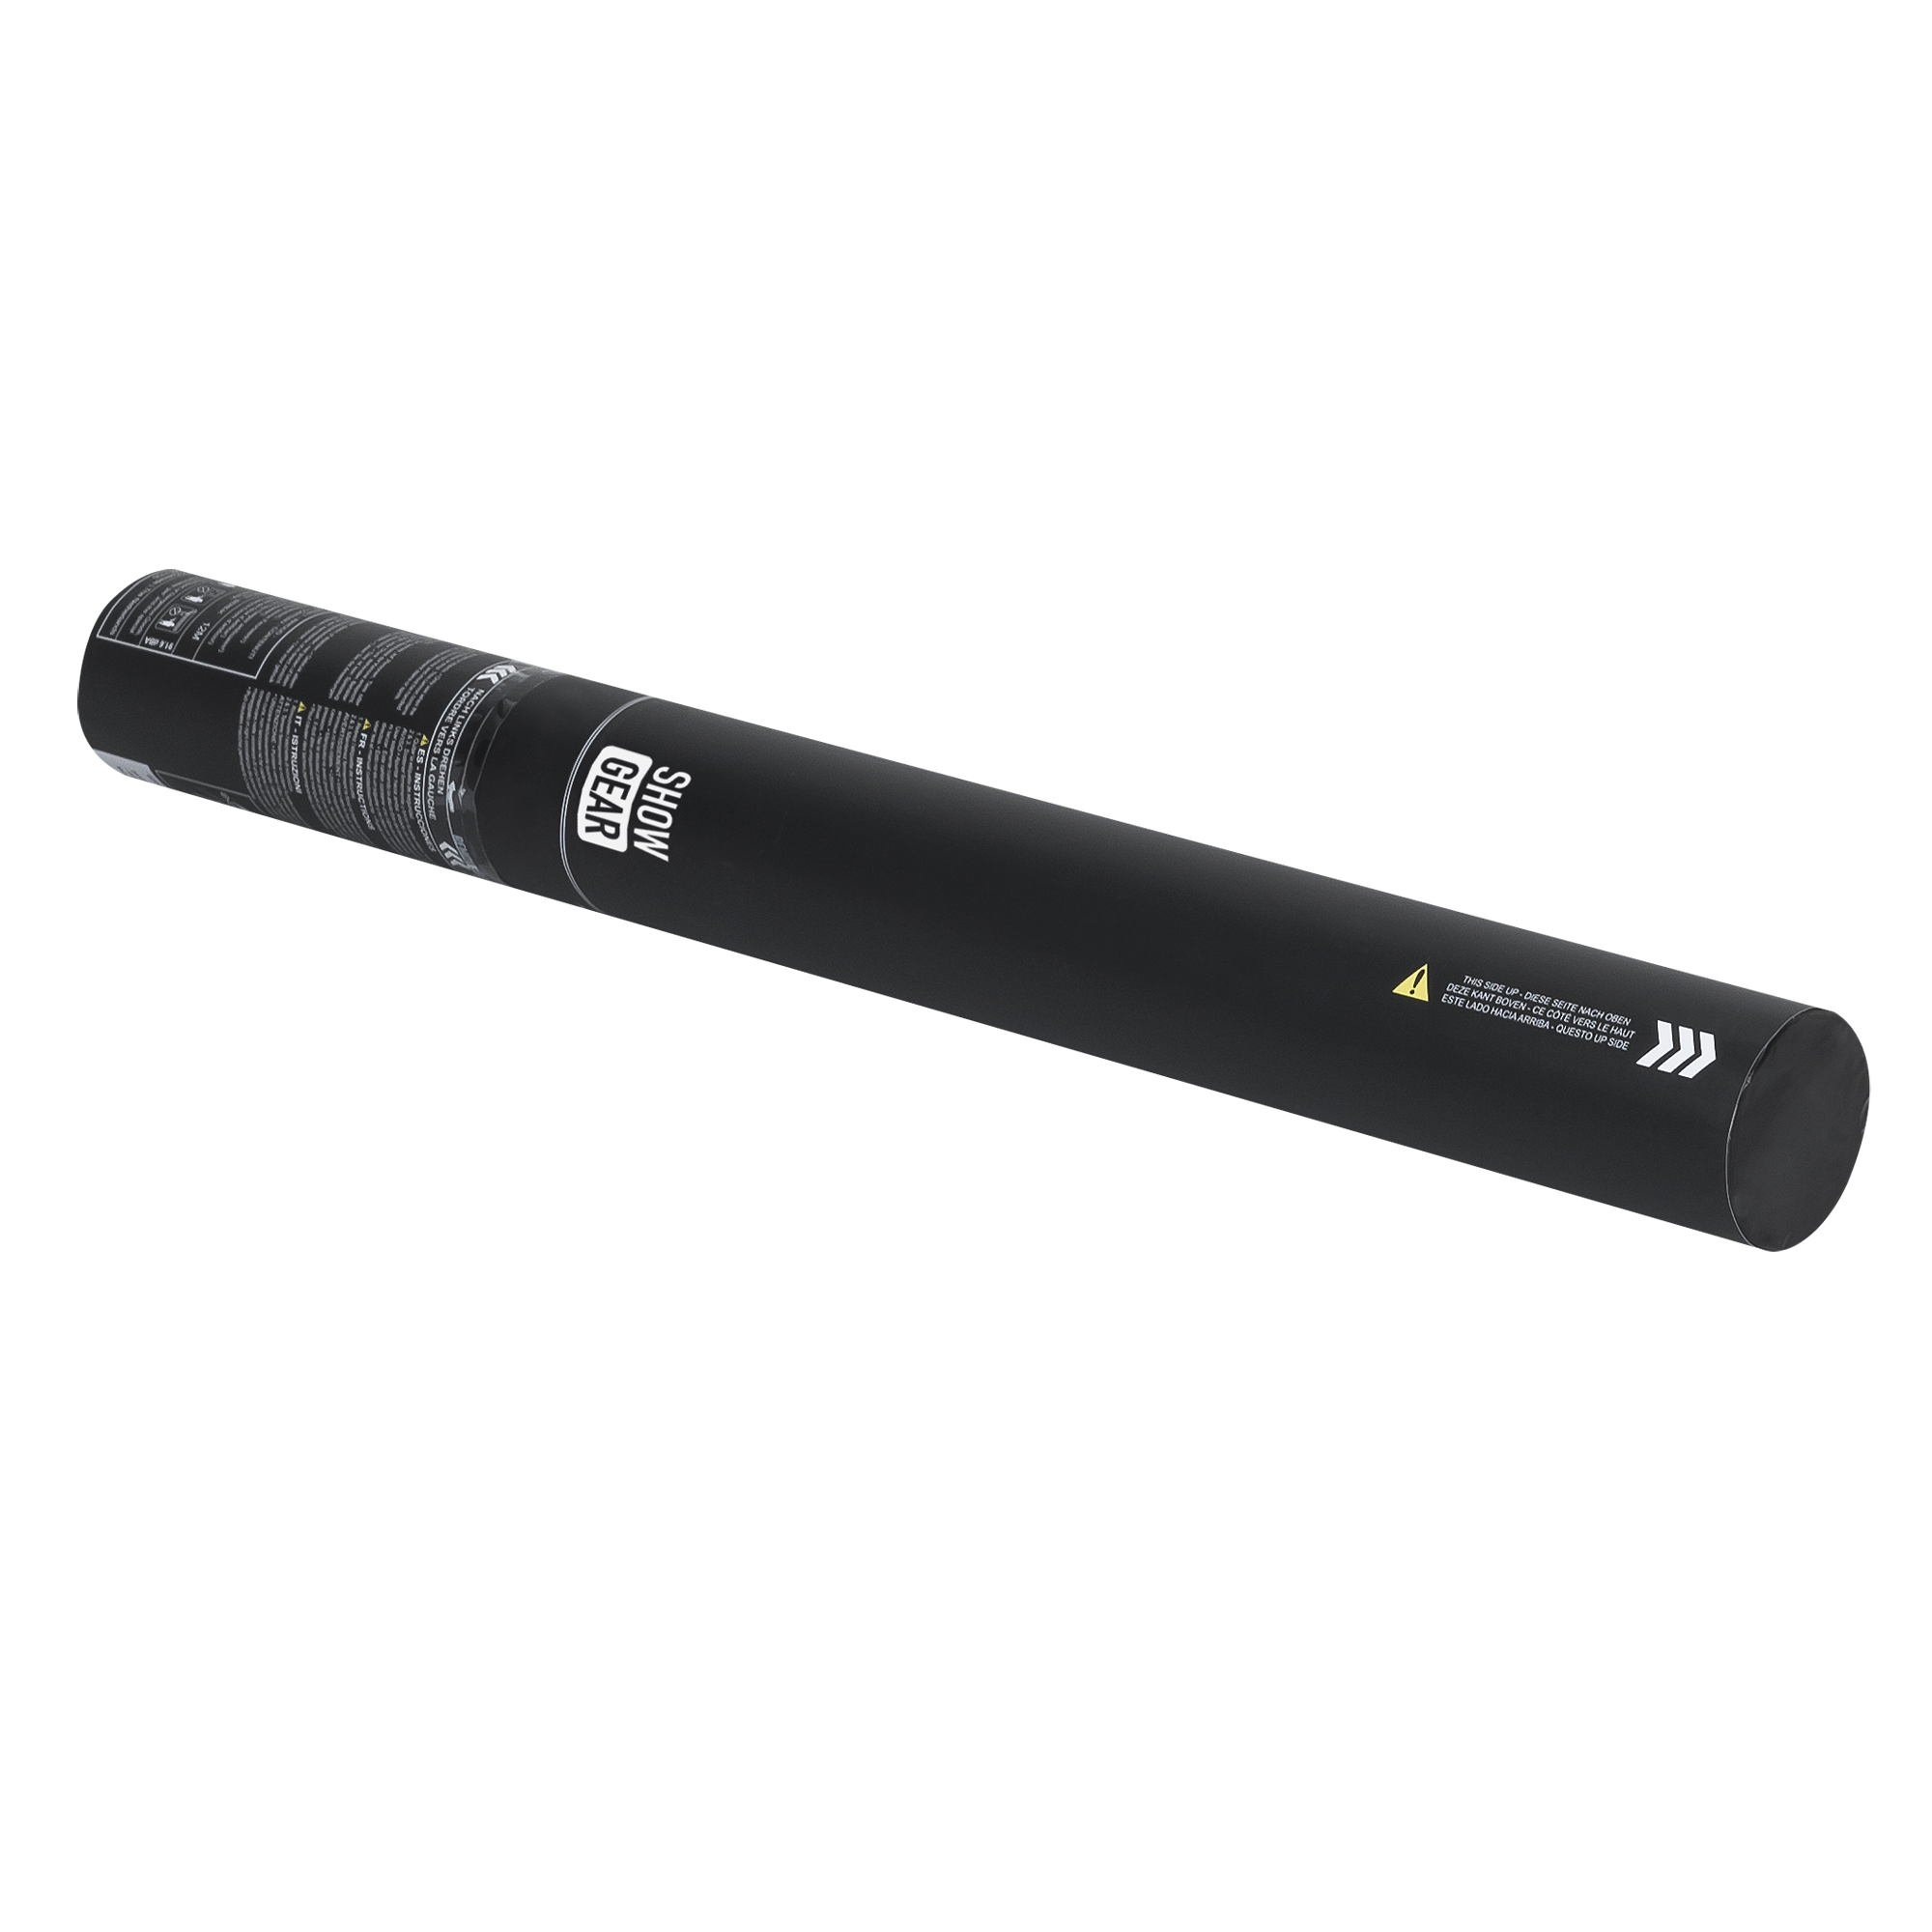 Showgear Handheld Streamer Cannon 50 cm, schwarz, feuerhemmend und biologisch abbaubar